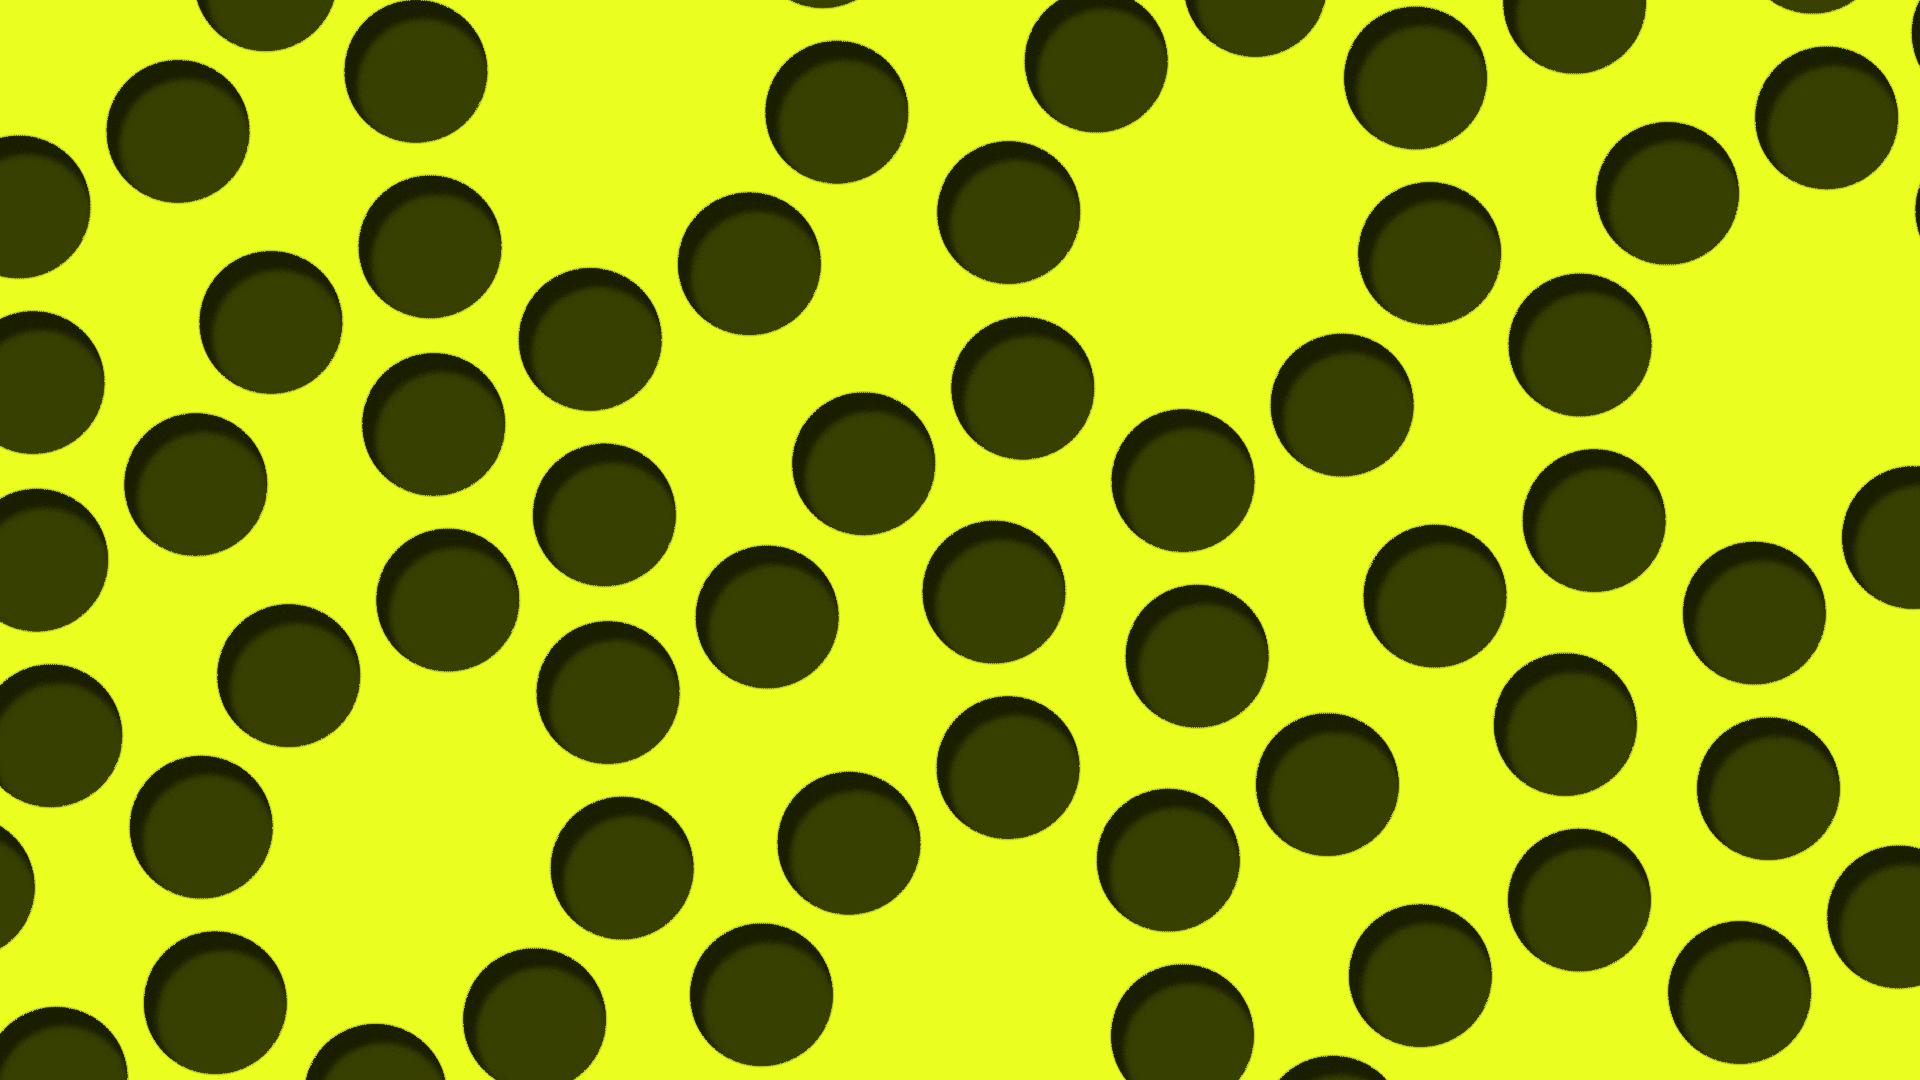 General 1920x1080 polka dots circle dots yellow digital art